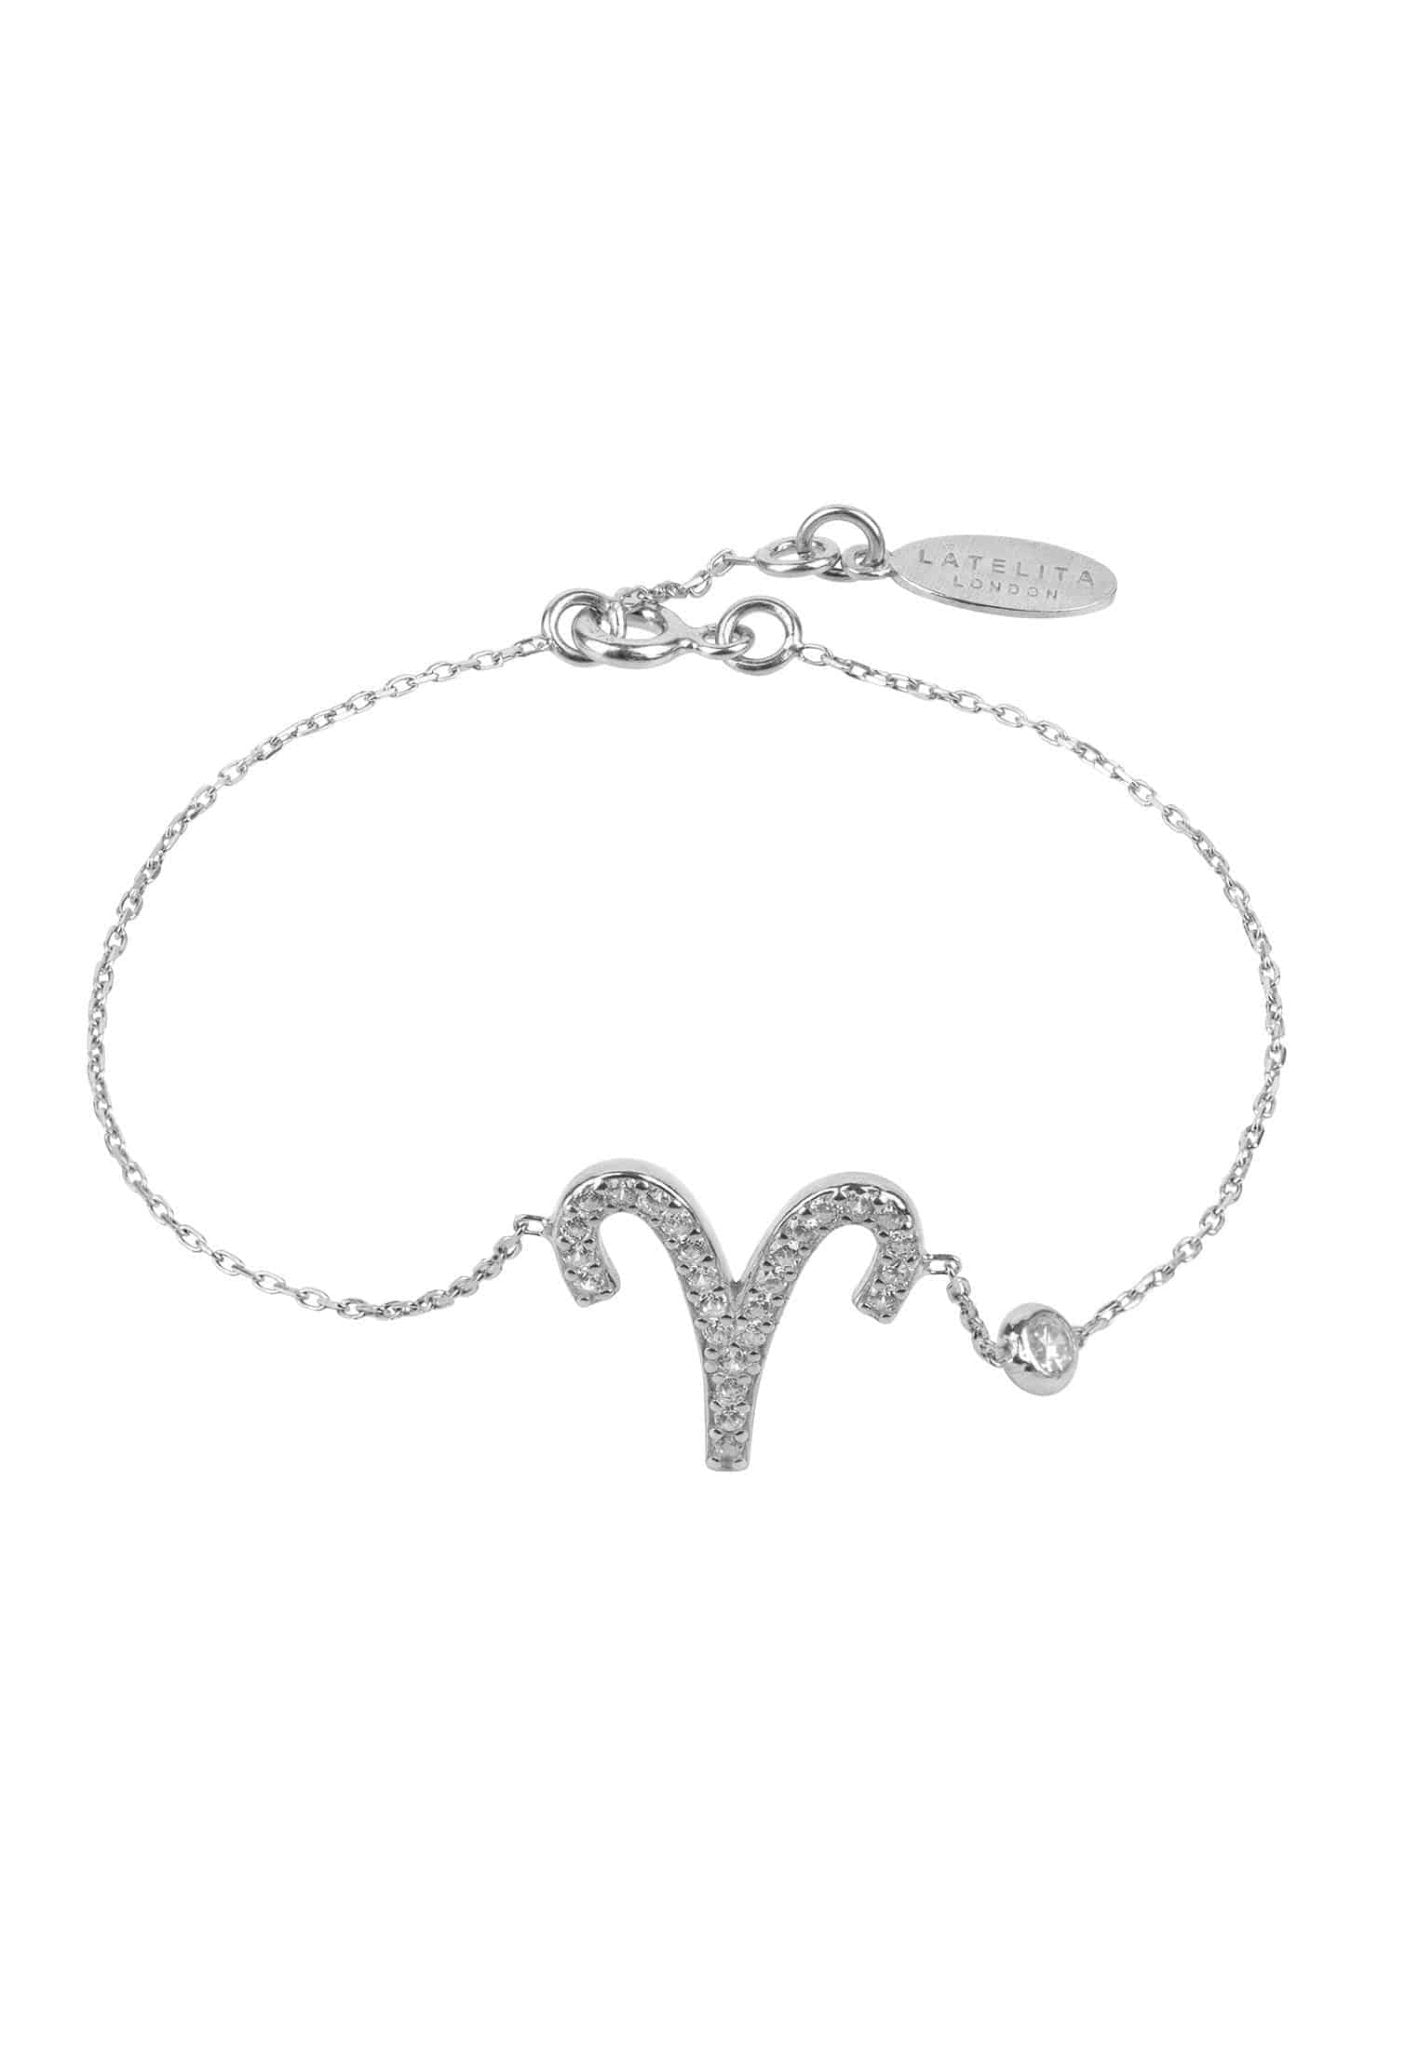 Personalized Bracelets - Zodiac Star Sign Bracelet Aries 